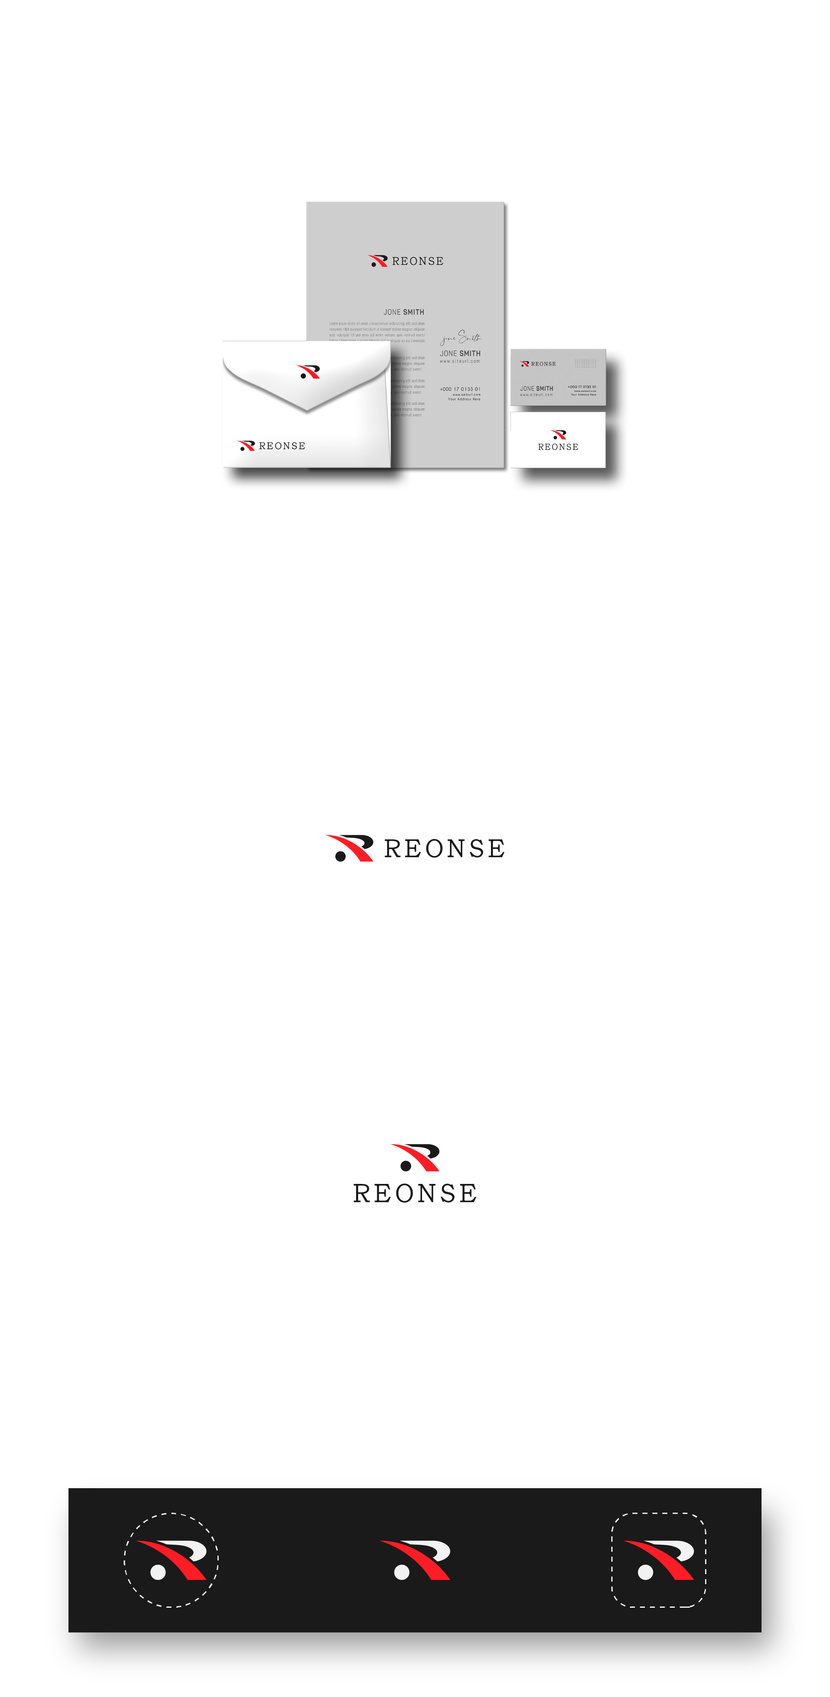 ㅤ - Разработка логотипа компании